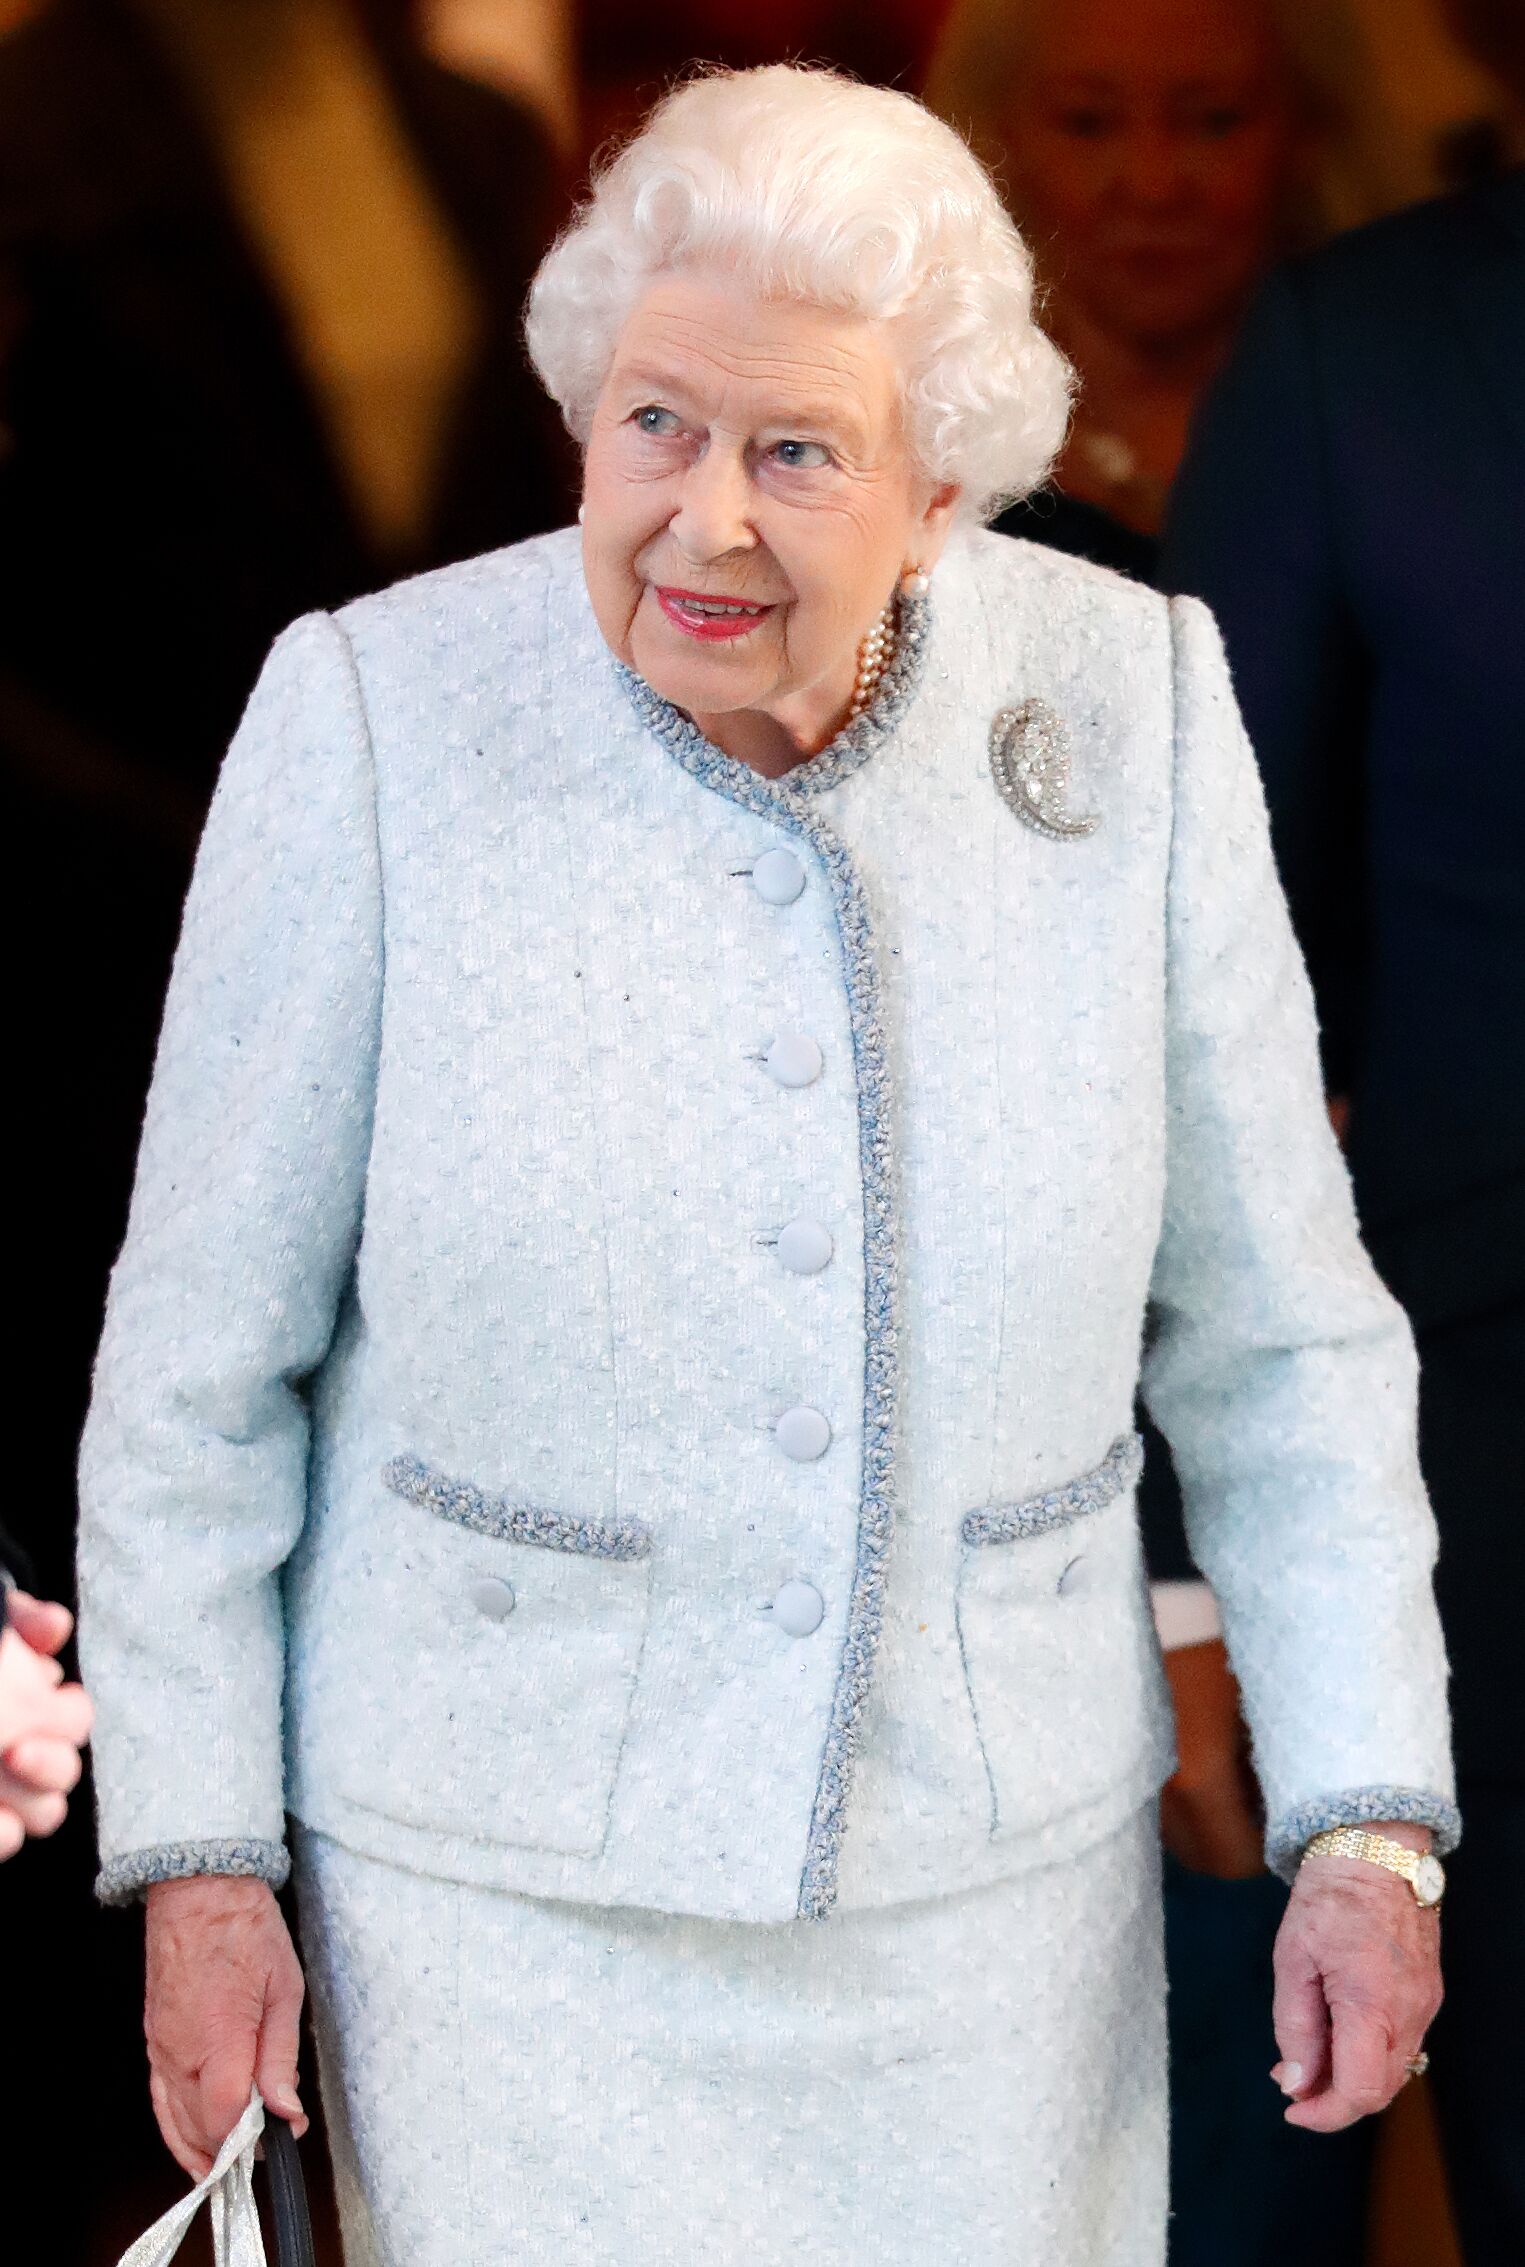 La reine Elizabeth II lors d'un déjeuner de Noël | Source: Getty Images